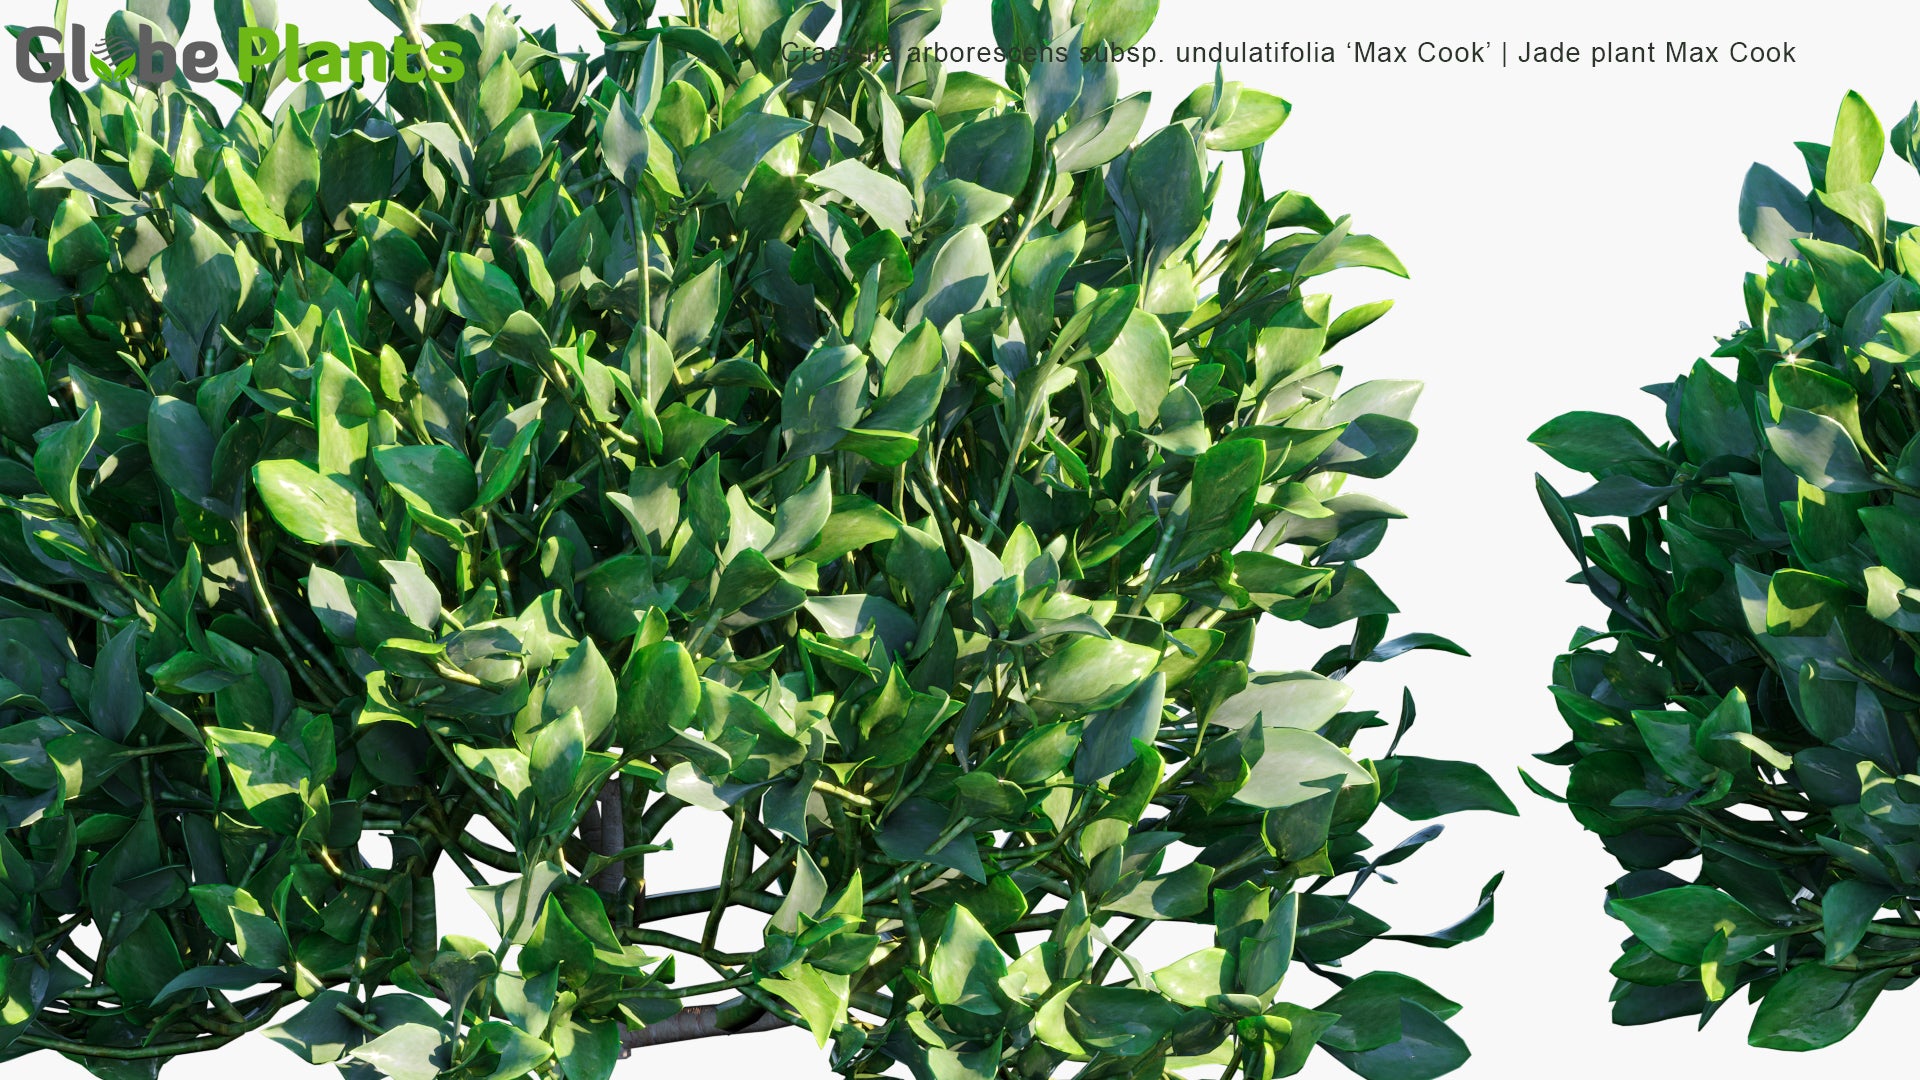 Crassula Arborescens Subsp. Undulatifolia 'Max Cook' - Jade Plant Max Cook